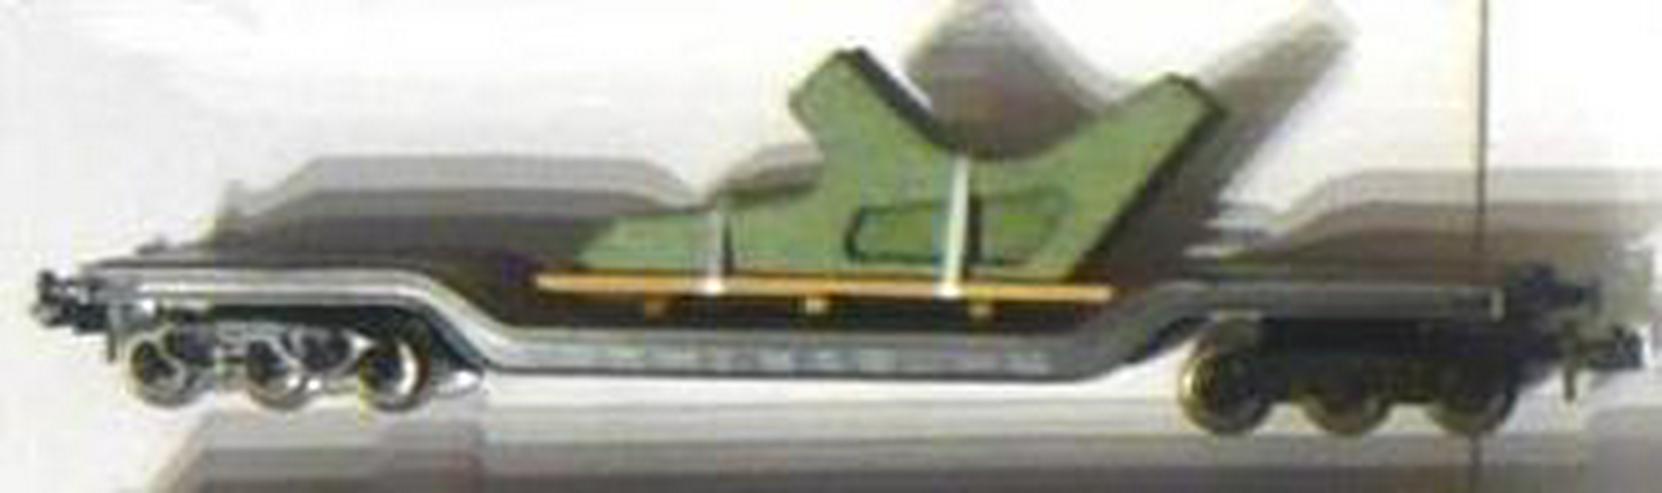 Bild 5: Roco Trix N Güterzug Set 5 Wagen in Verpackung GUT